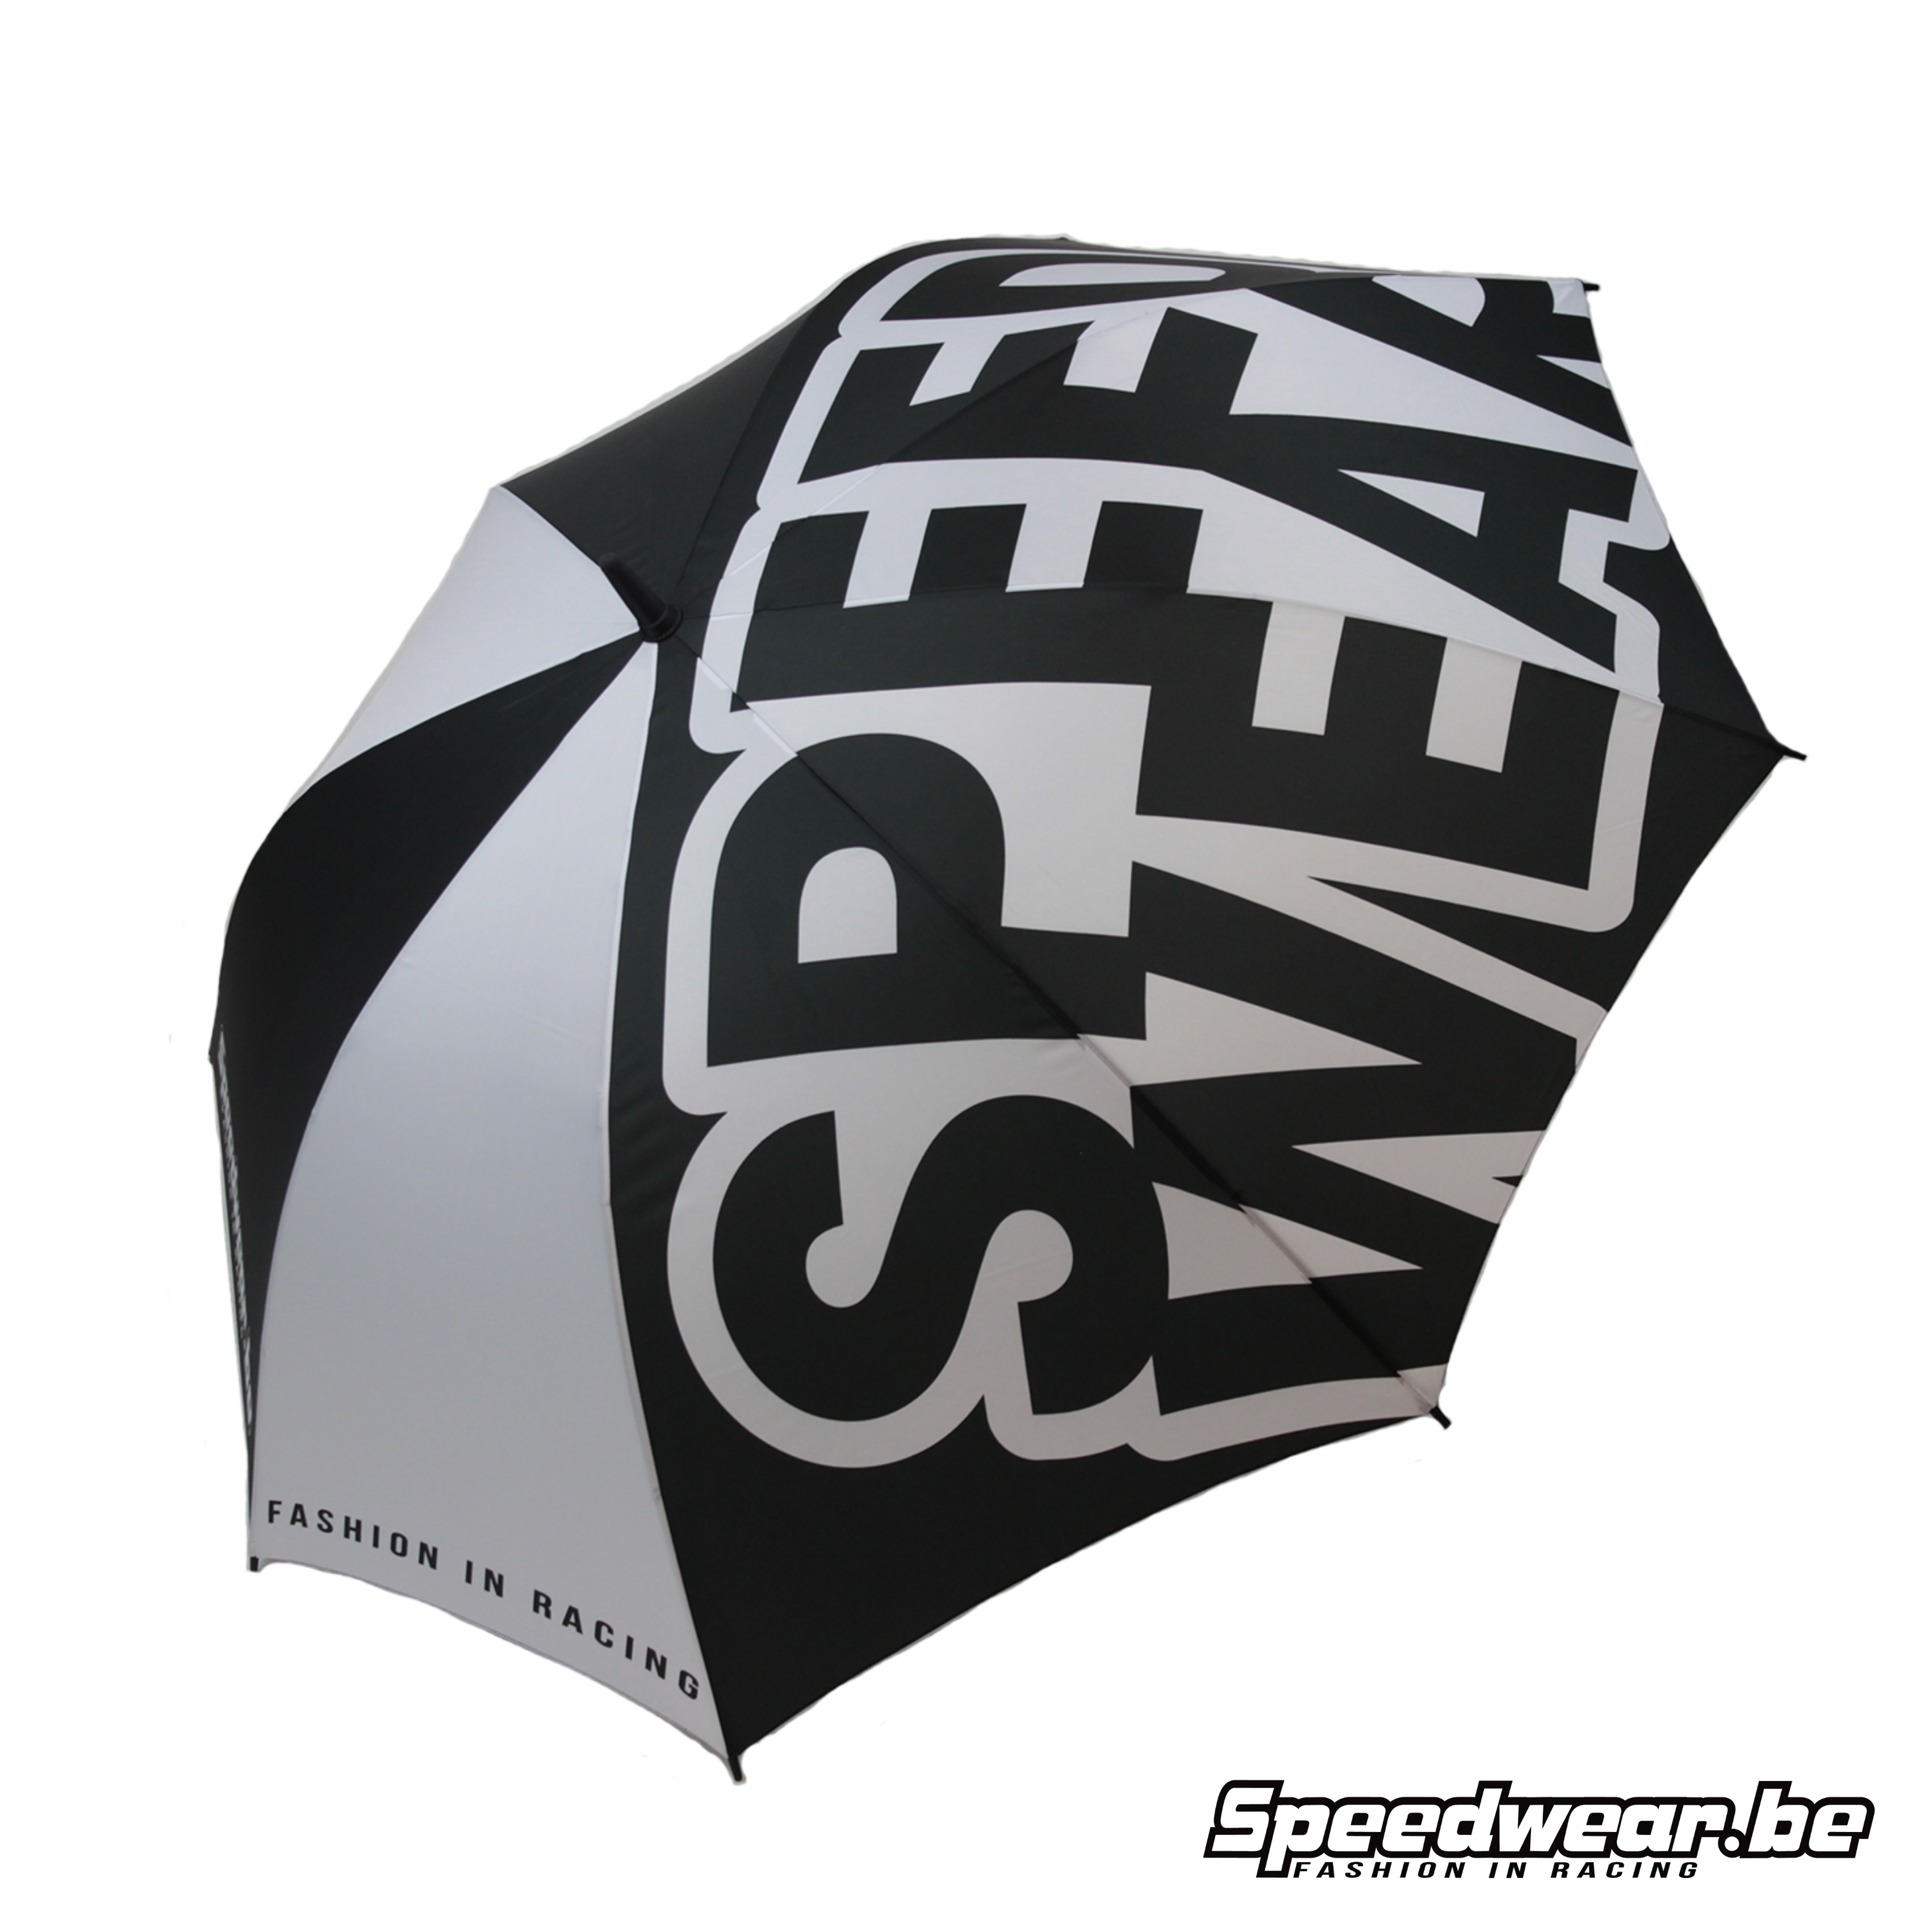 Speedwear Paraplu